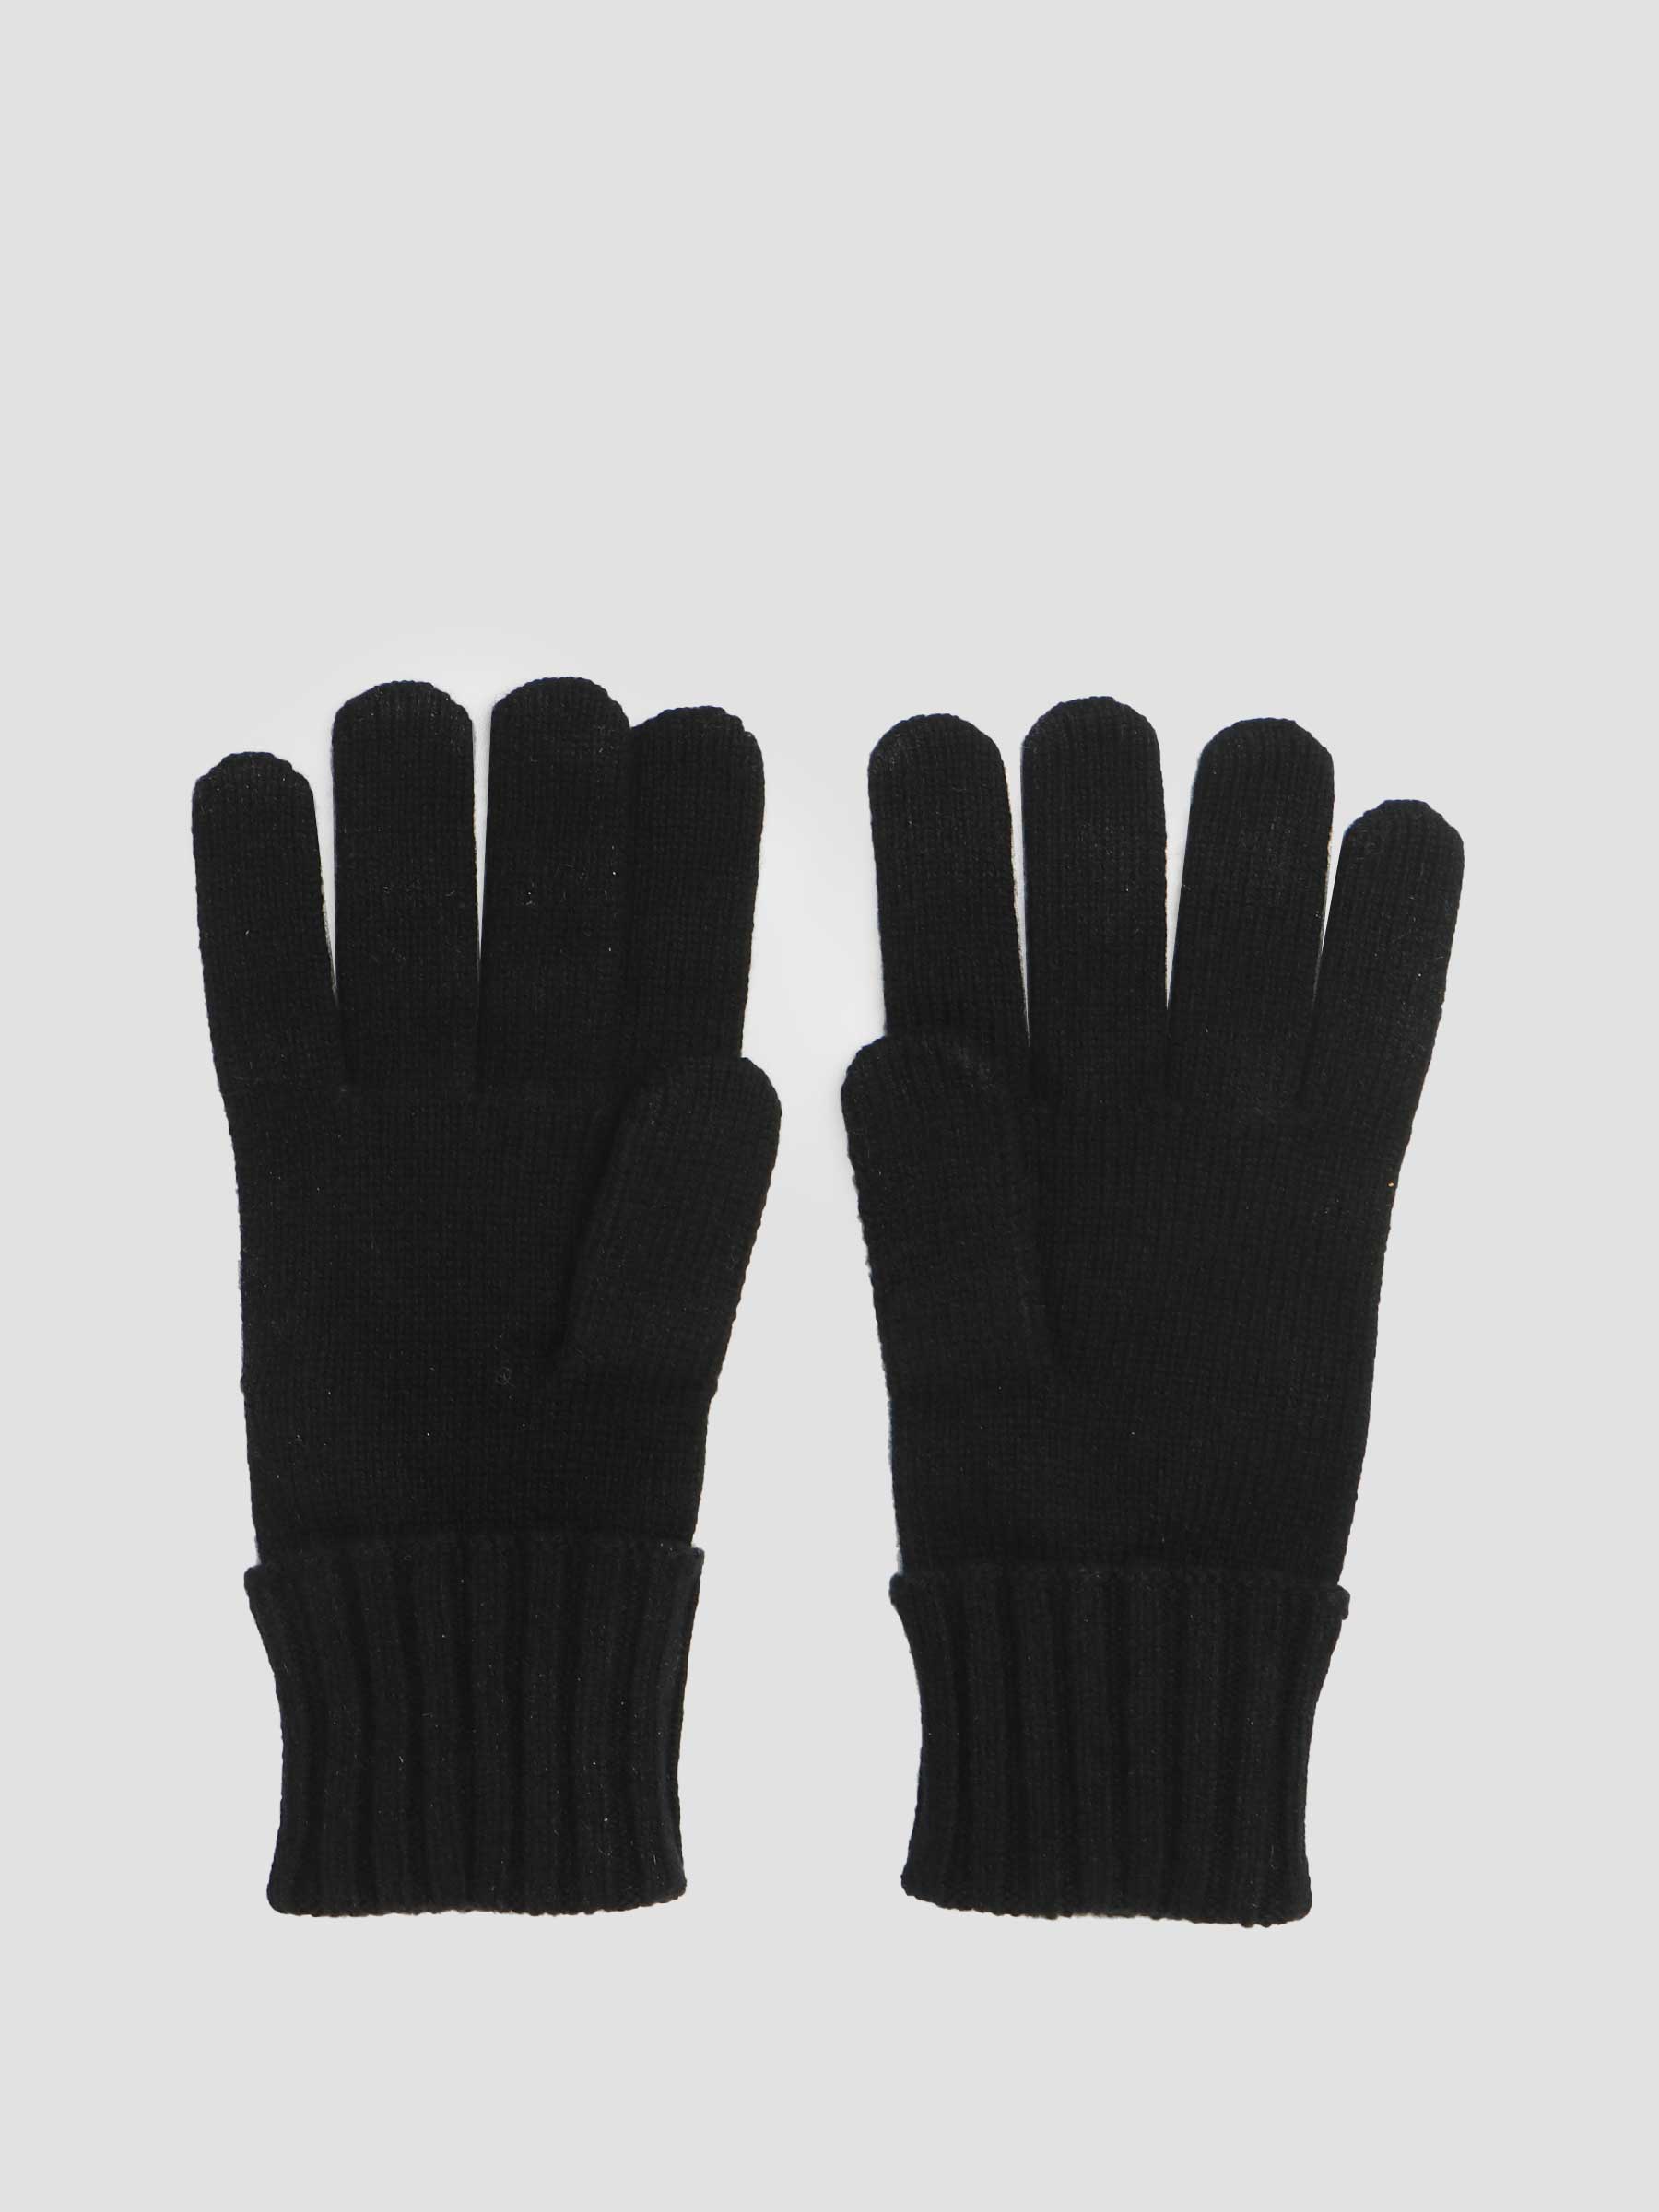 Lacoste 2G61 Gloves 09 Black RV2783-13 | Freshcotton